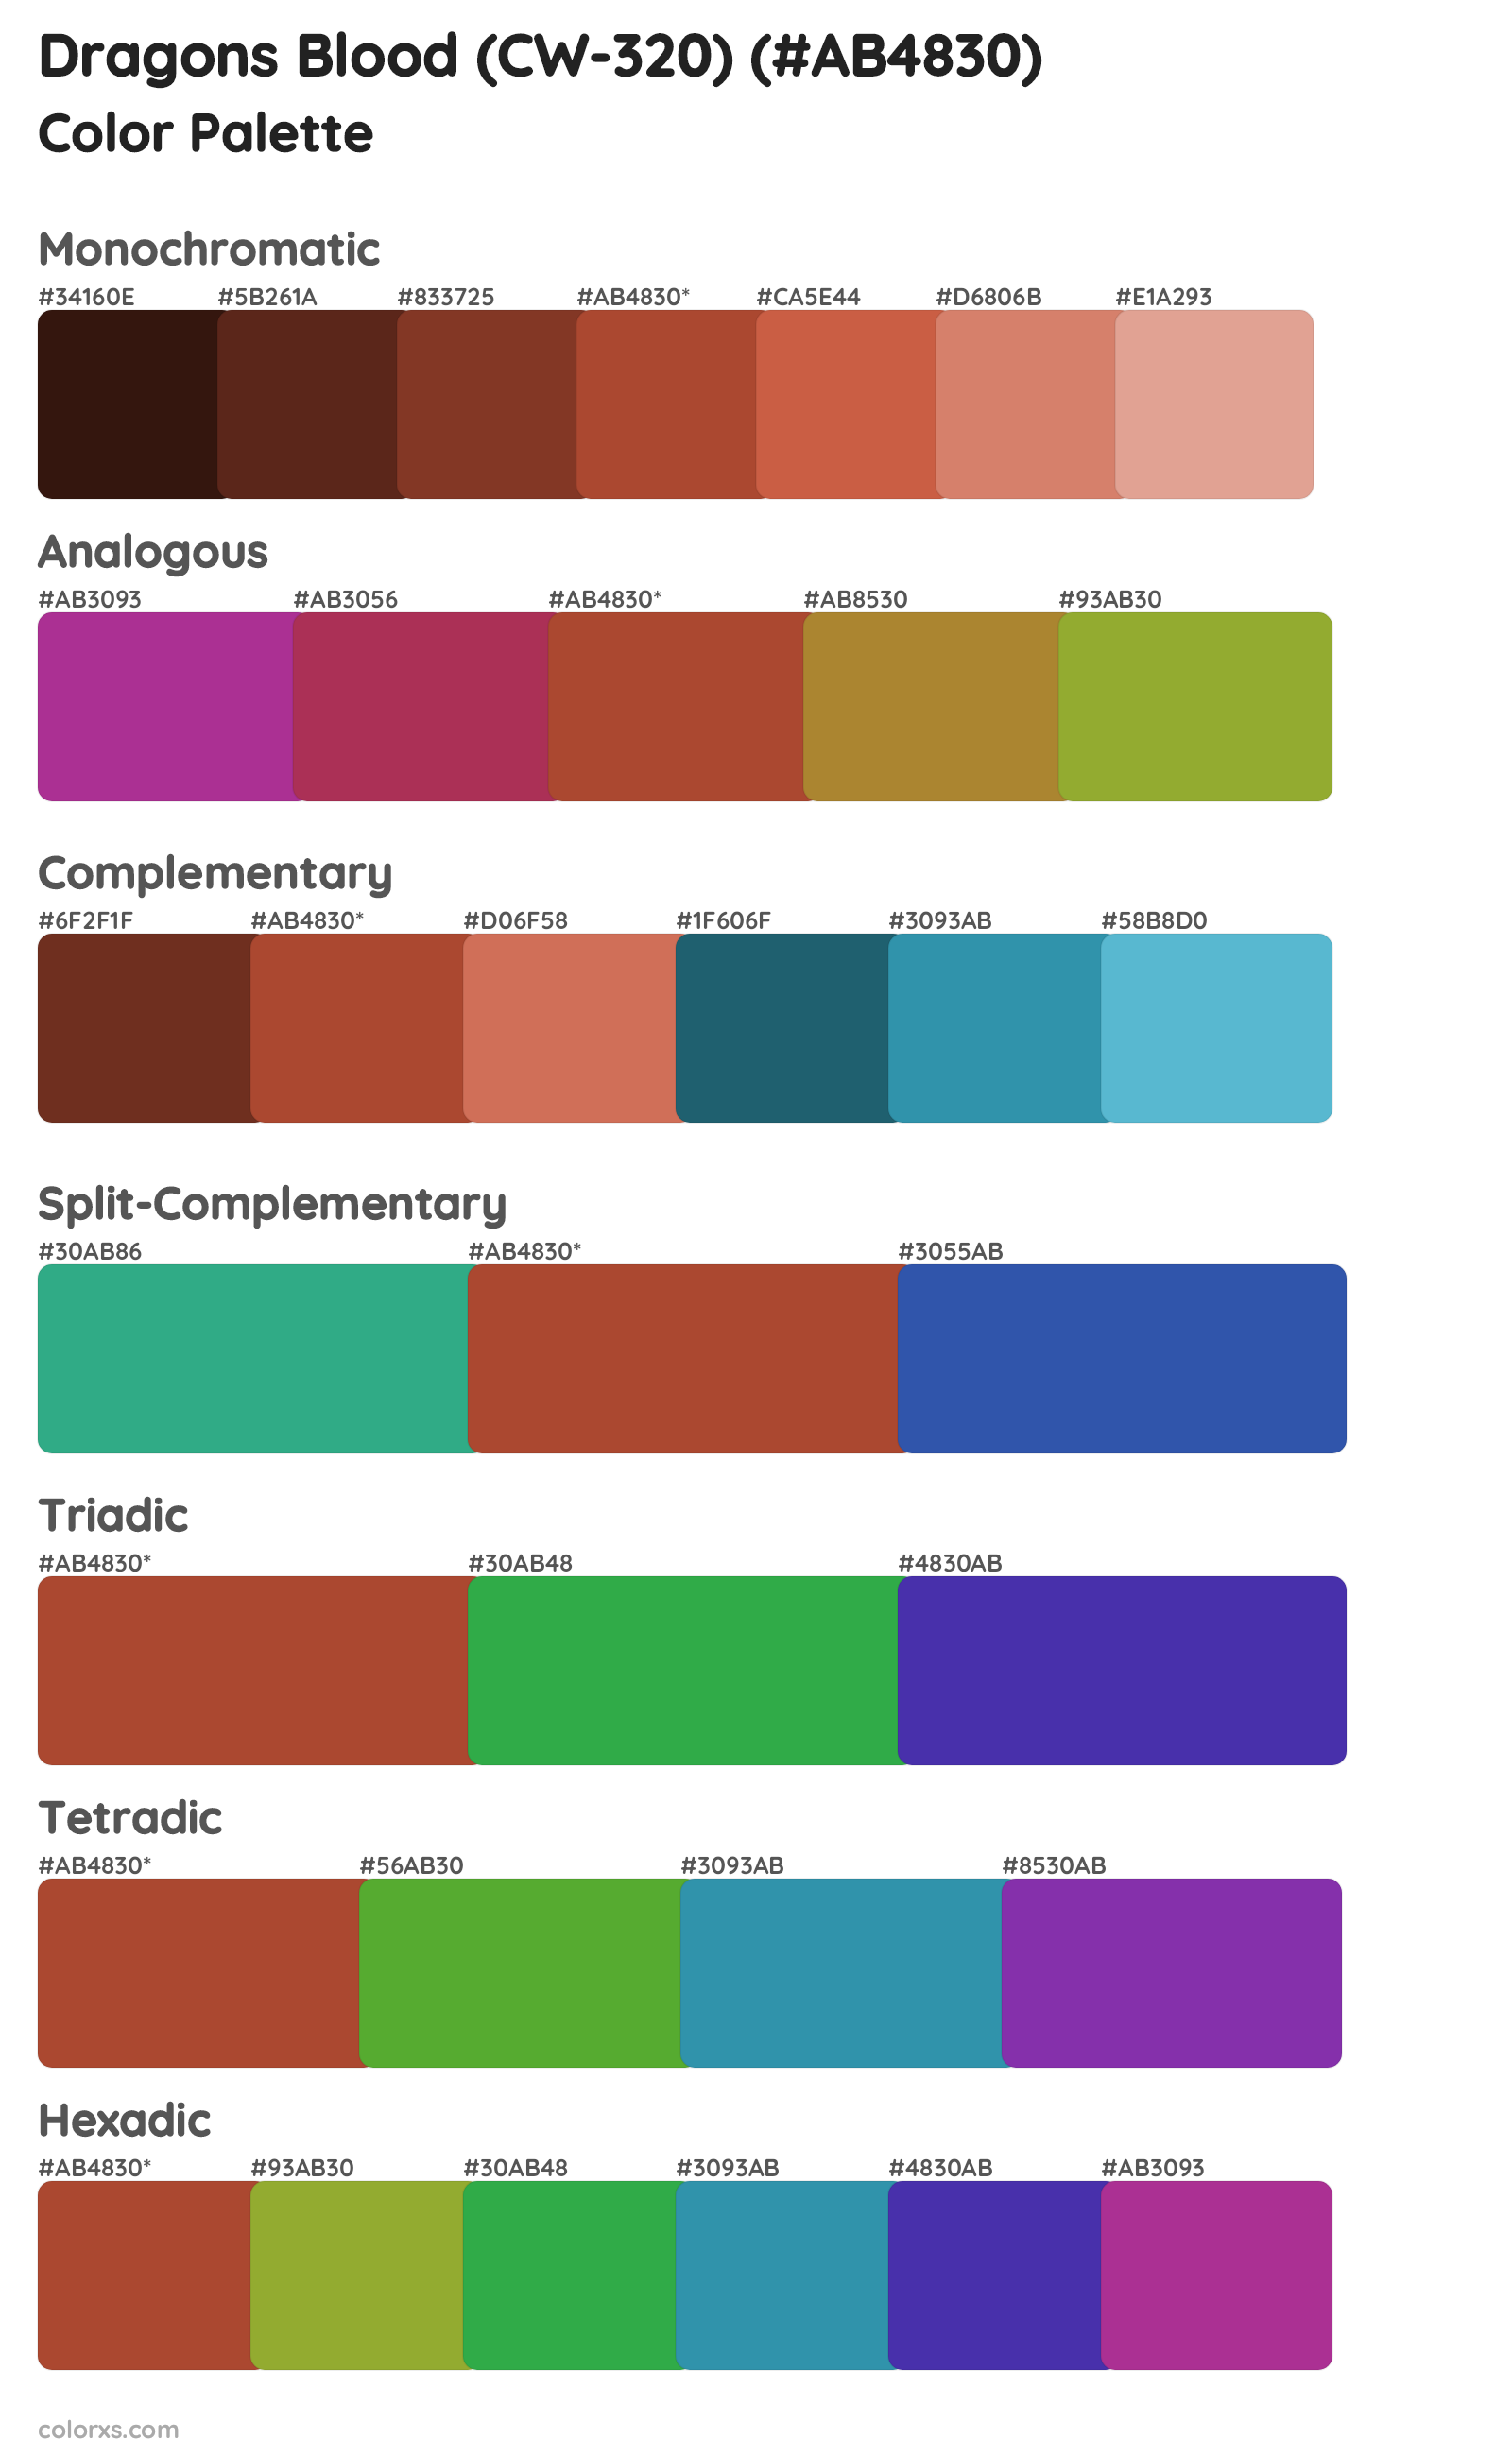 Dragons Blood (CW-320) Color Scheme Palettes